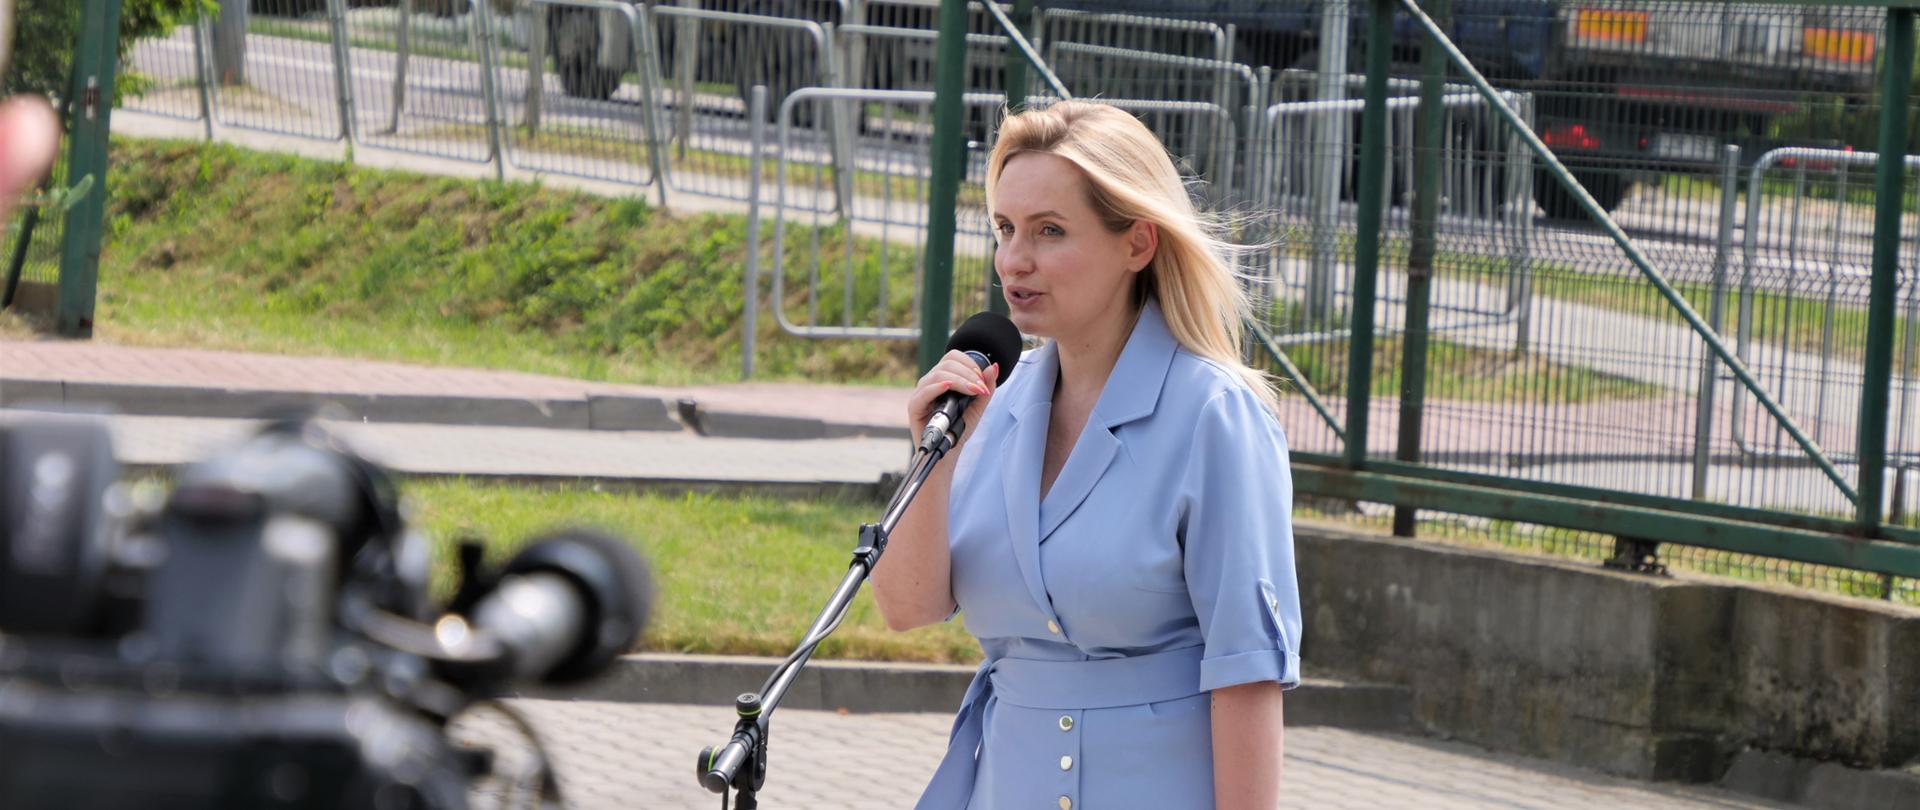 Zdjęcie przedstawia jedną osobę stojącą na zewnątrz przy mikrofonie